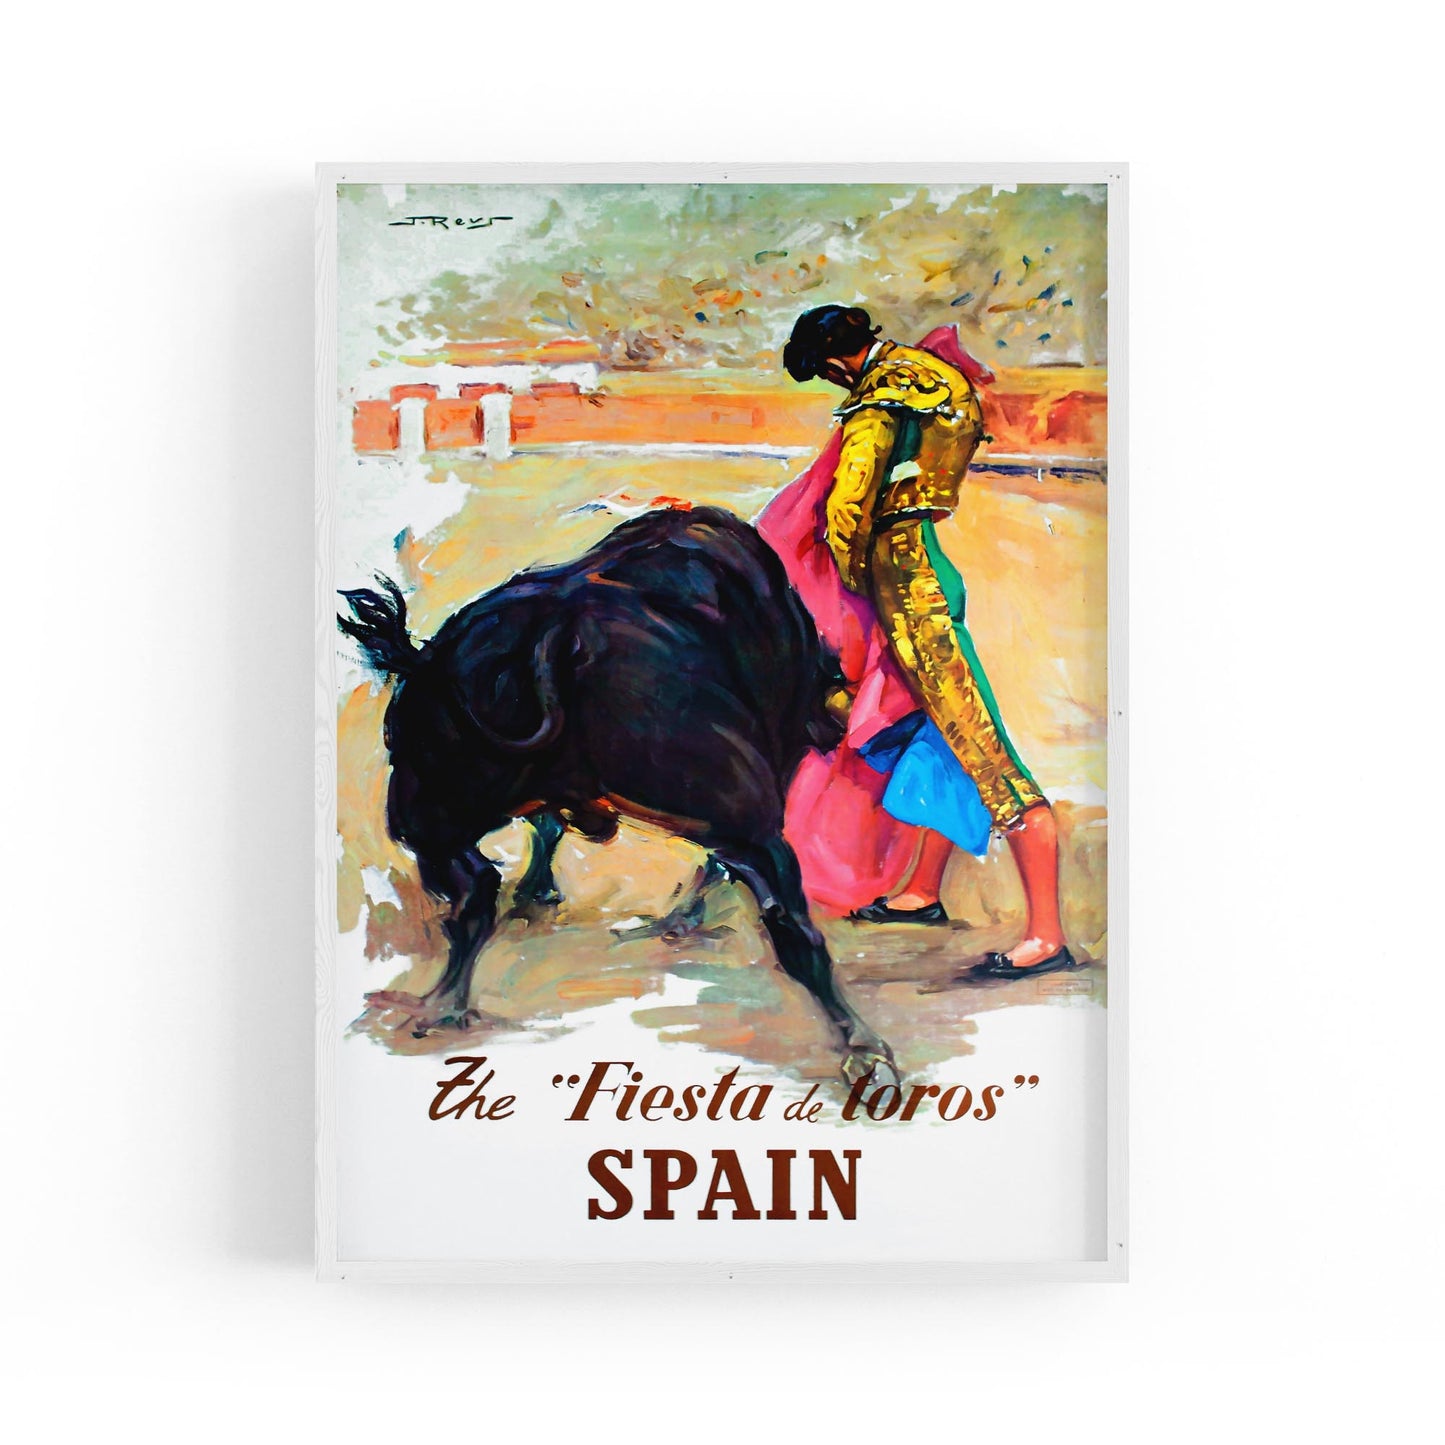 Spain by J. Reus | Framed Vintage Travel Poster